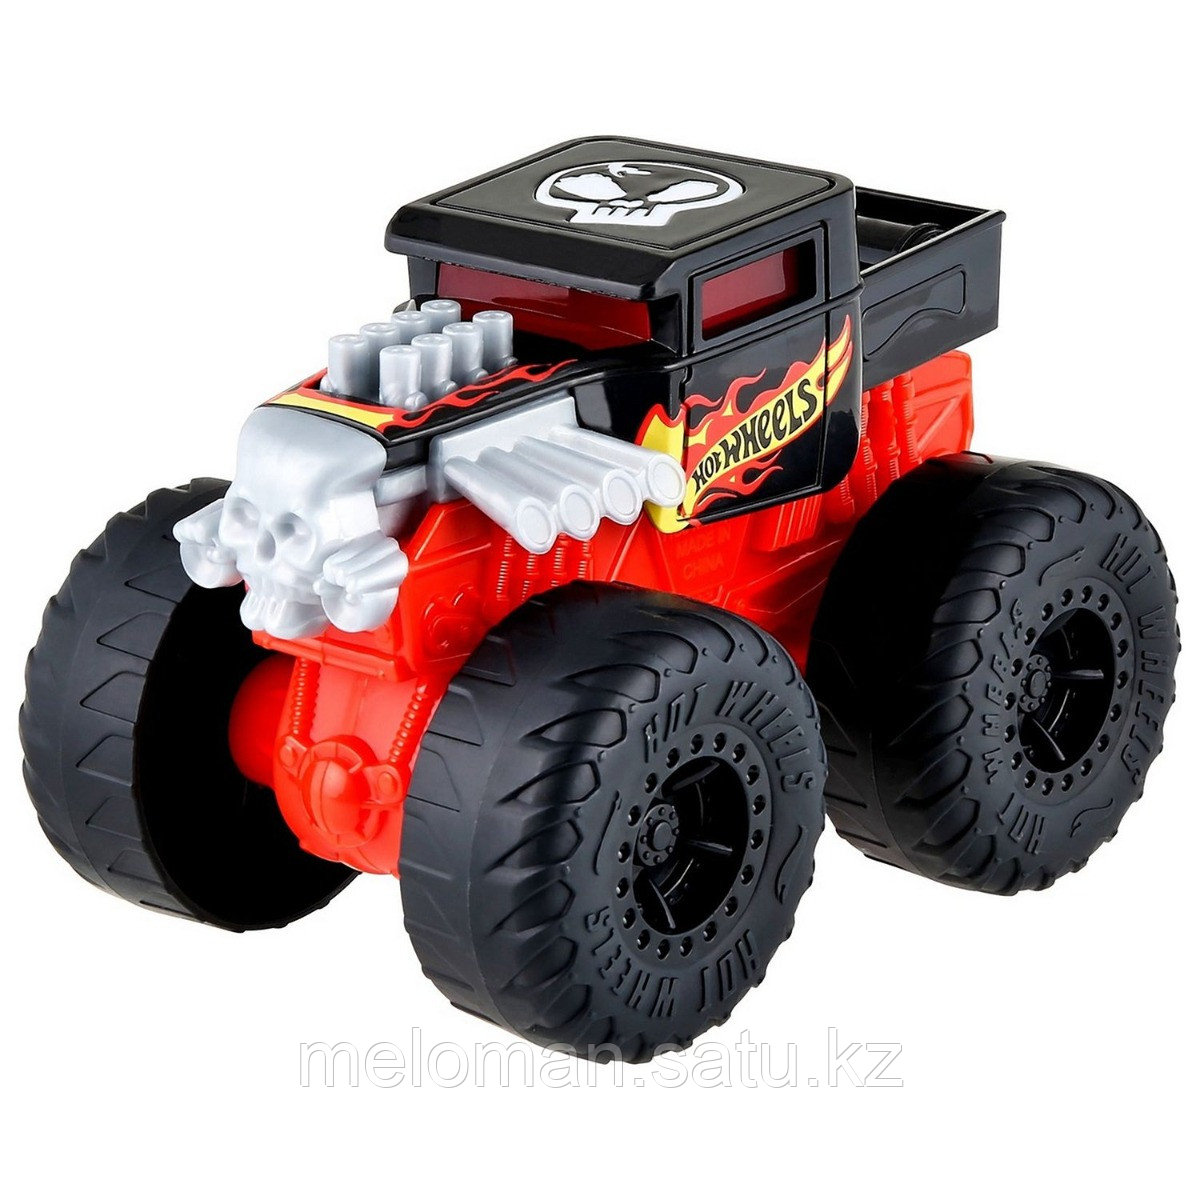 Hot Wheels: Monster Trucks. 1:43 машина со светом и звуком - BoneShaker